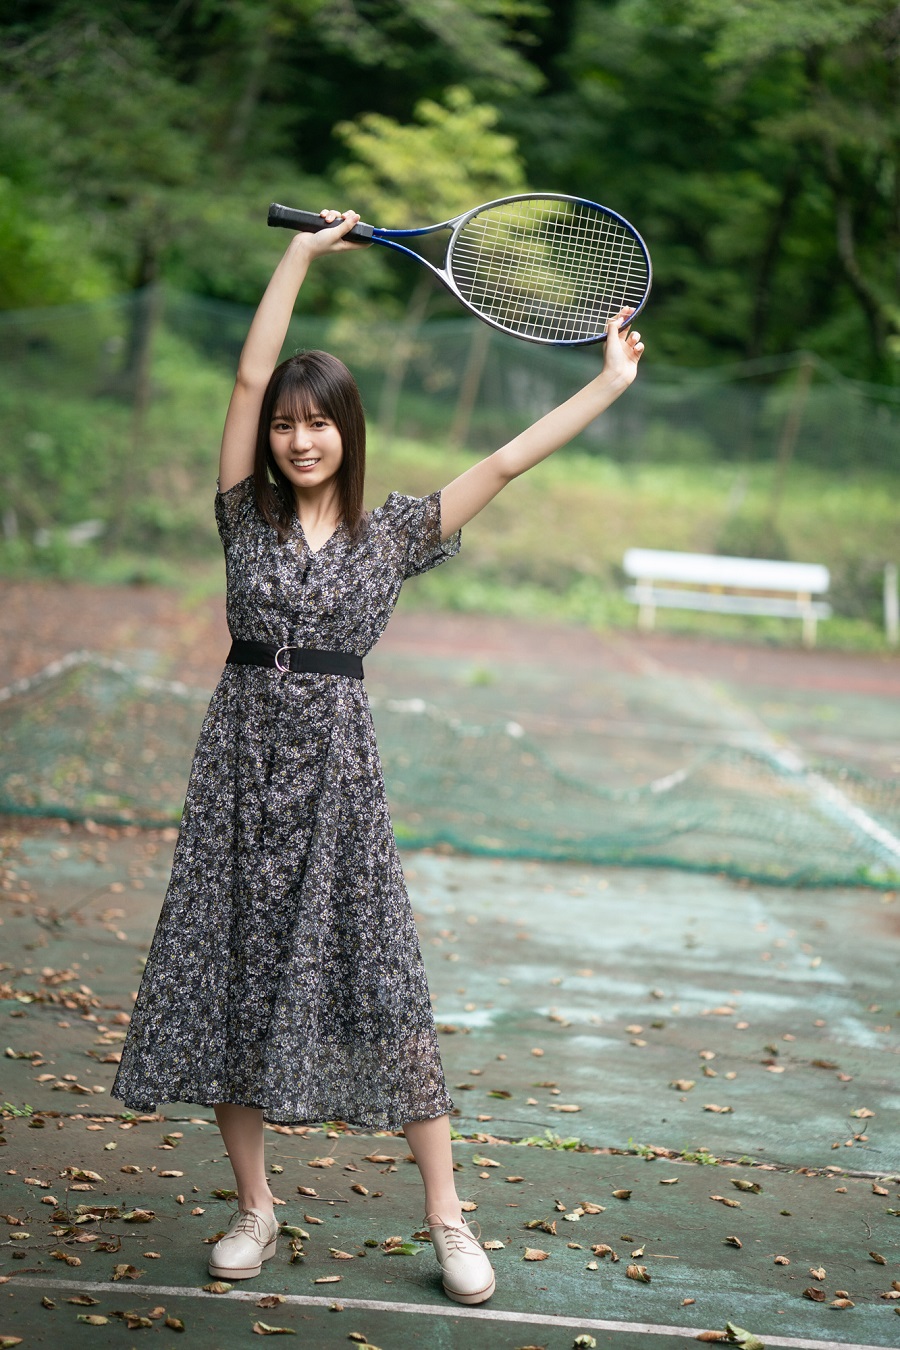 写真は、テニスラケットを持つ小坂菜緒さん/「blt graph. vol.57」(東京ニュース通信社)より